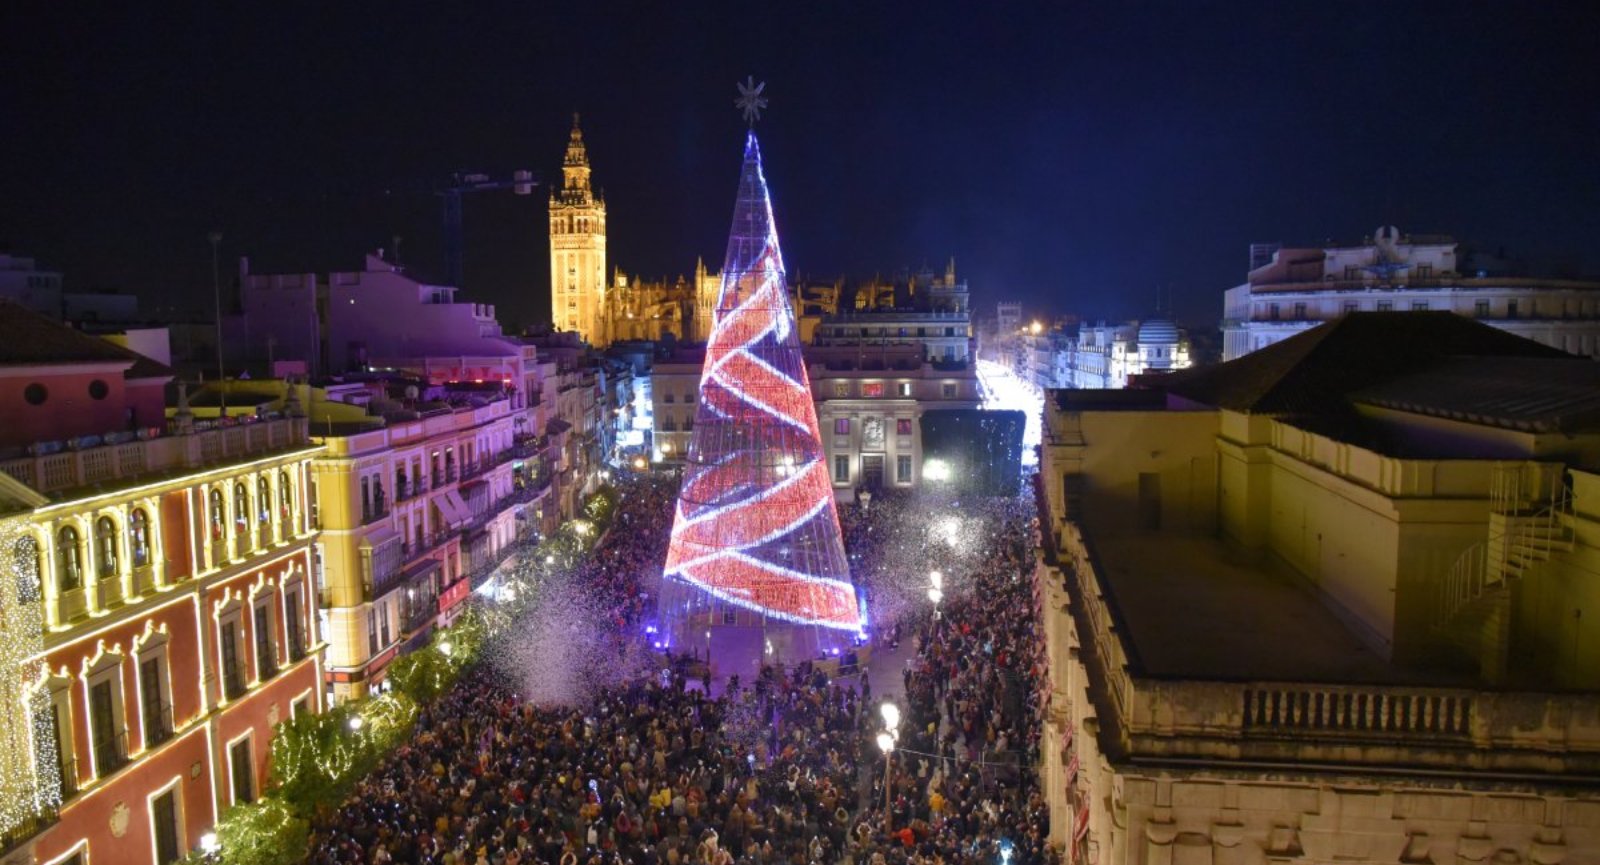 Luces de Navidad de Sevilla